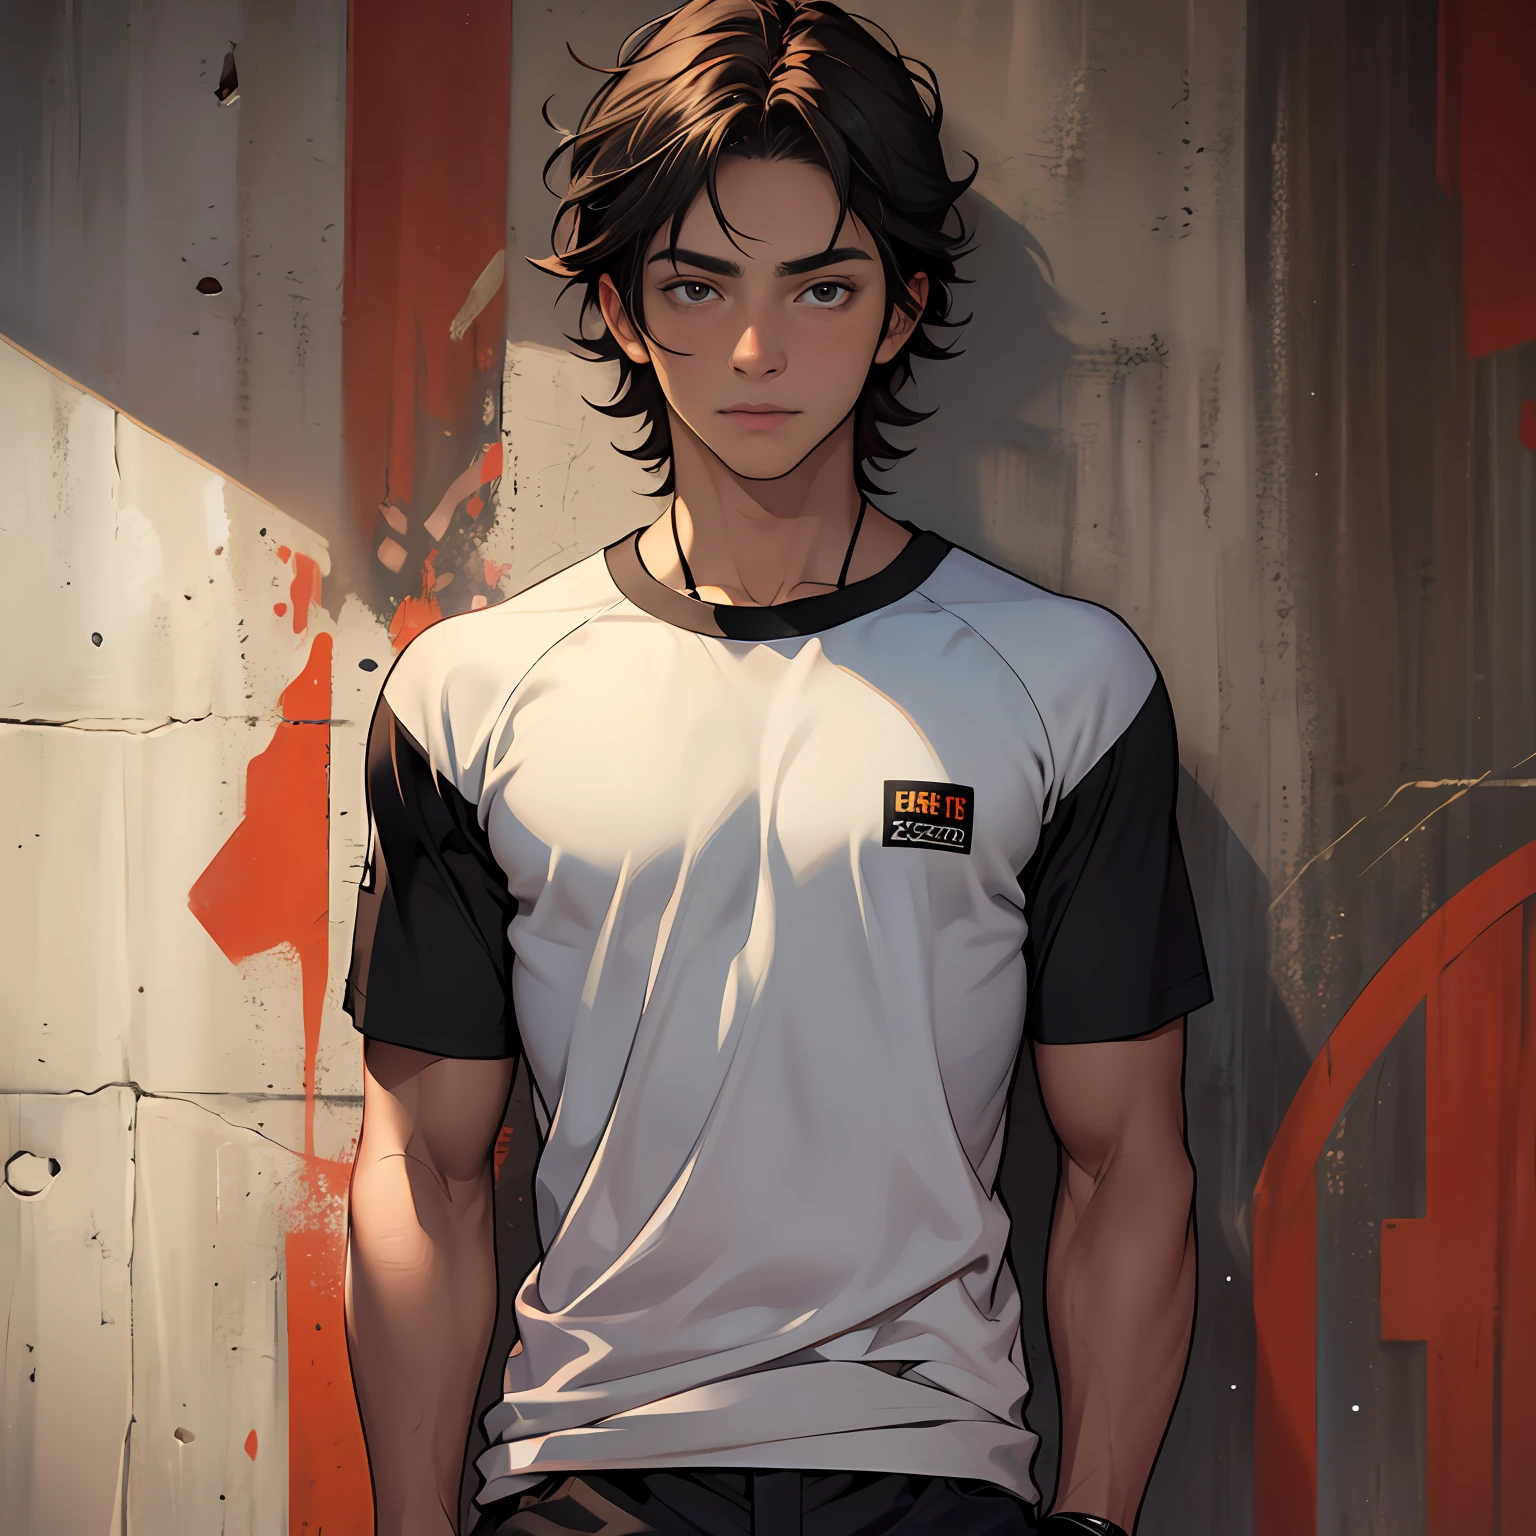 Ultrarealistisch, 16-jähriger Junge mit zimtbrauner Haut, getönter, athletischer Körper, glattes Haar,Ein ernsthafter, nachdenklicher männlicher Beobachter trägt ein schwarzes T-Shirt